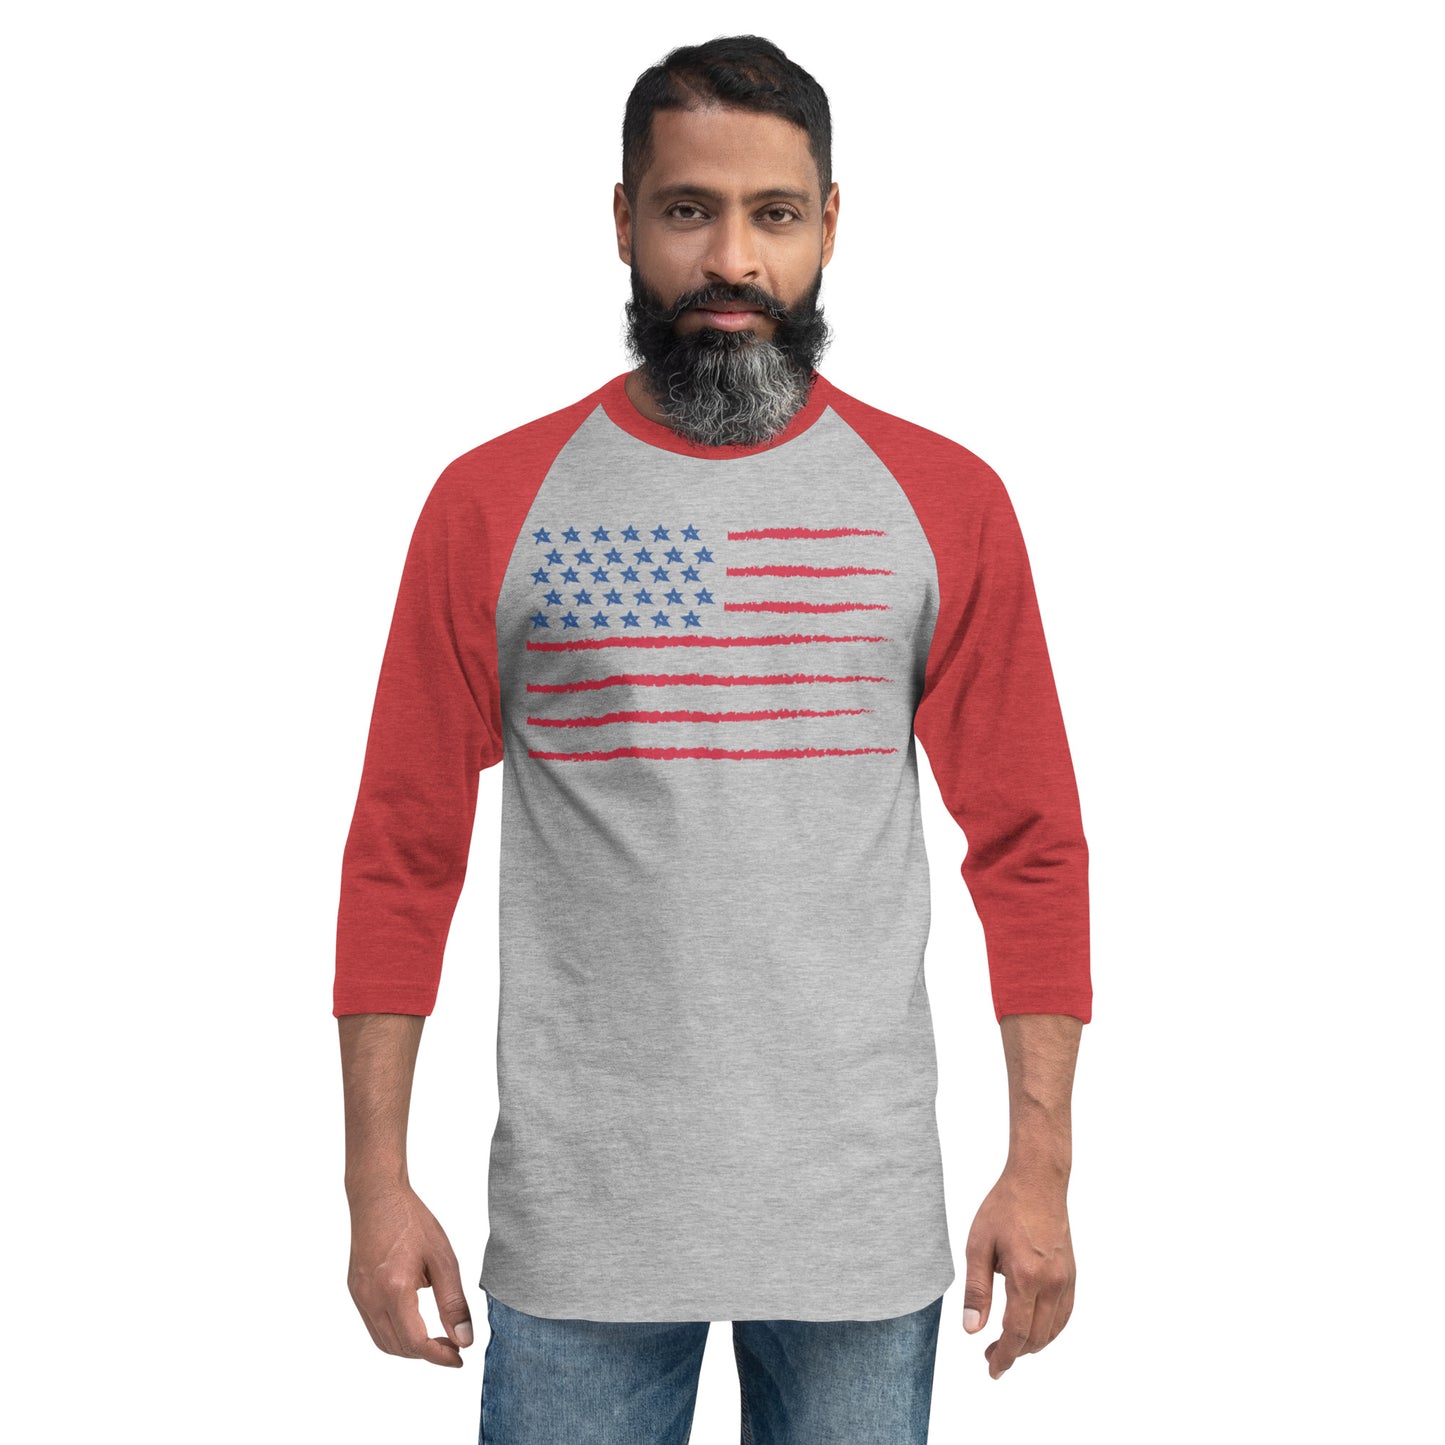 Freedom 3/4 sleeve raglan shirt